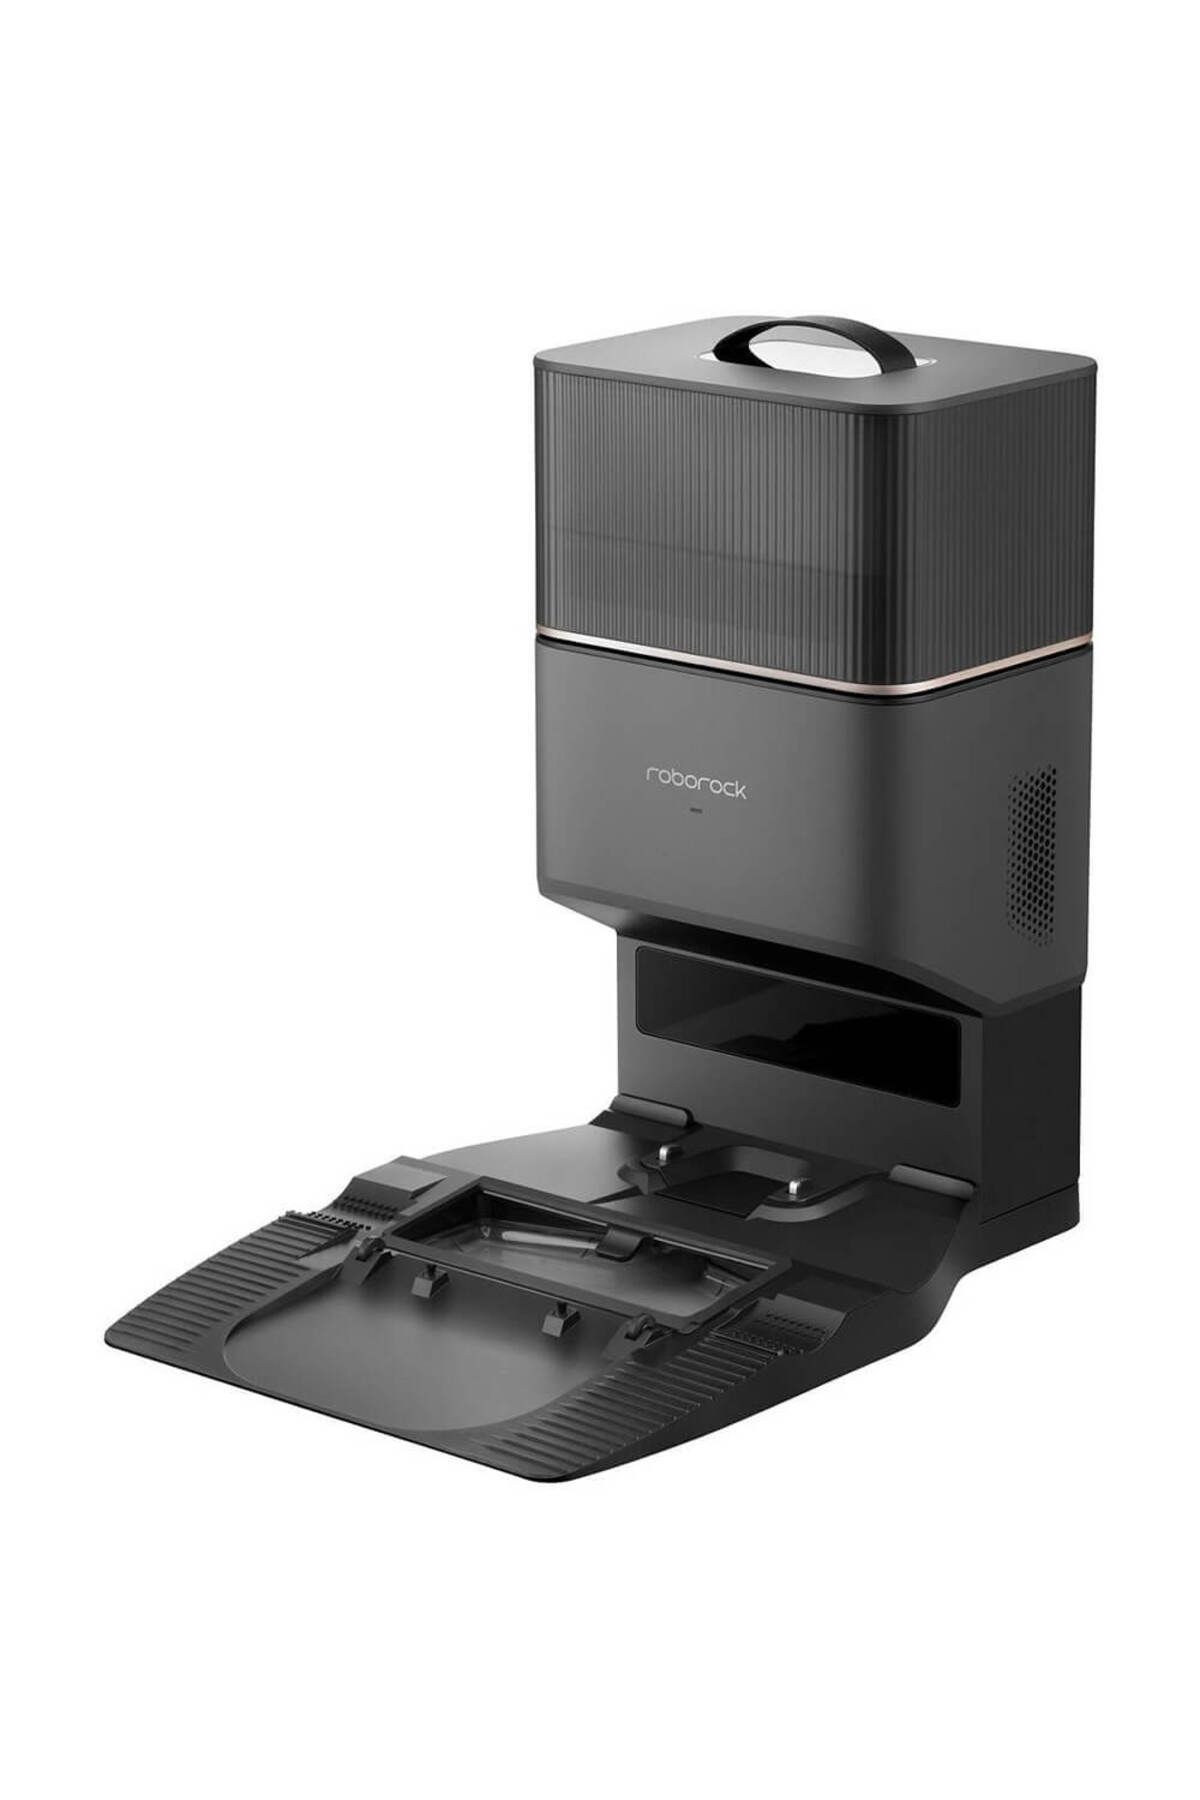 Roborock Vacuum Cleanner Q8 Max Robot Süpürge Beyaz Fiyatı, Yorumları -  Trendyol